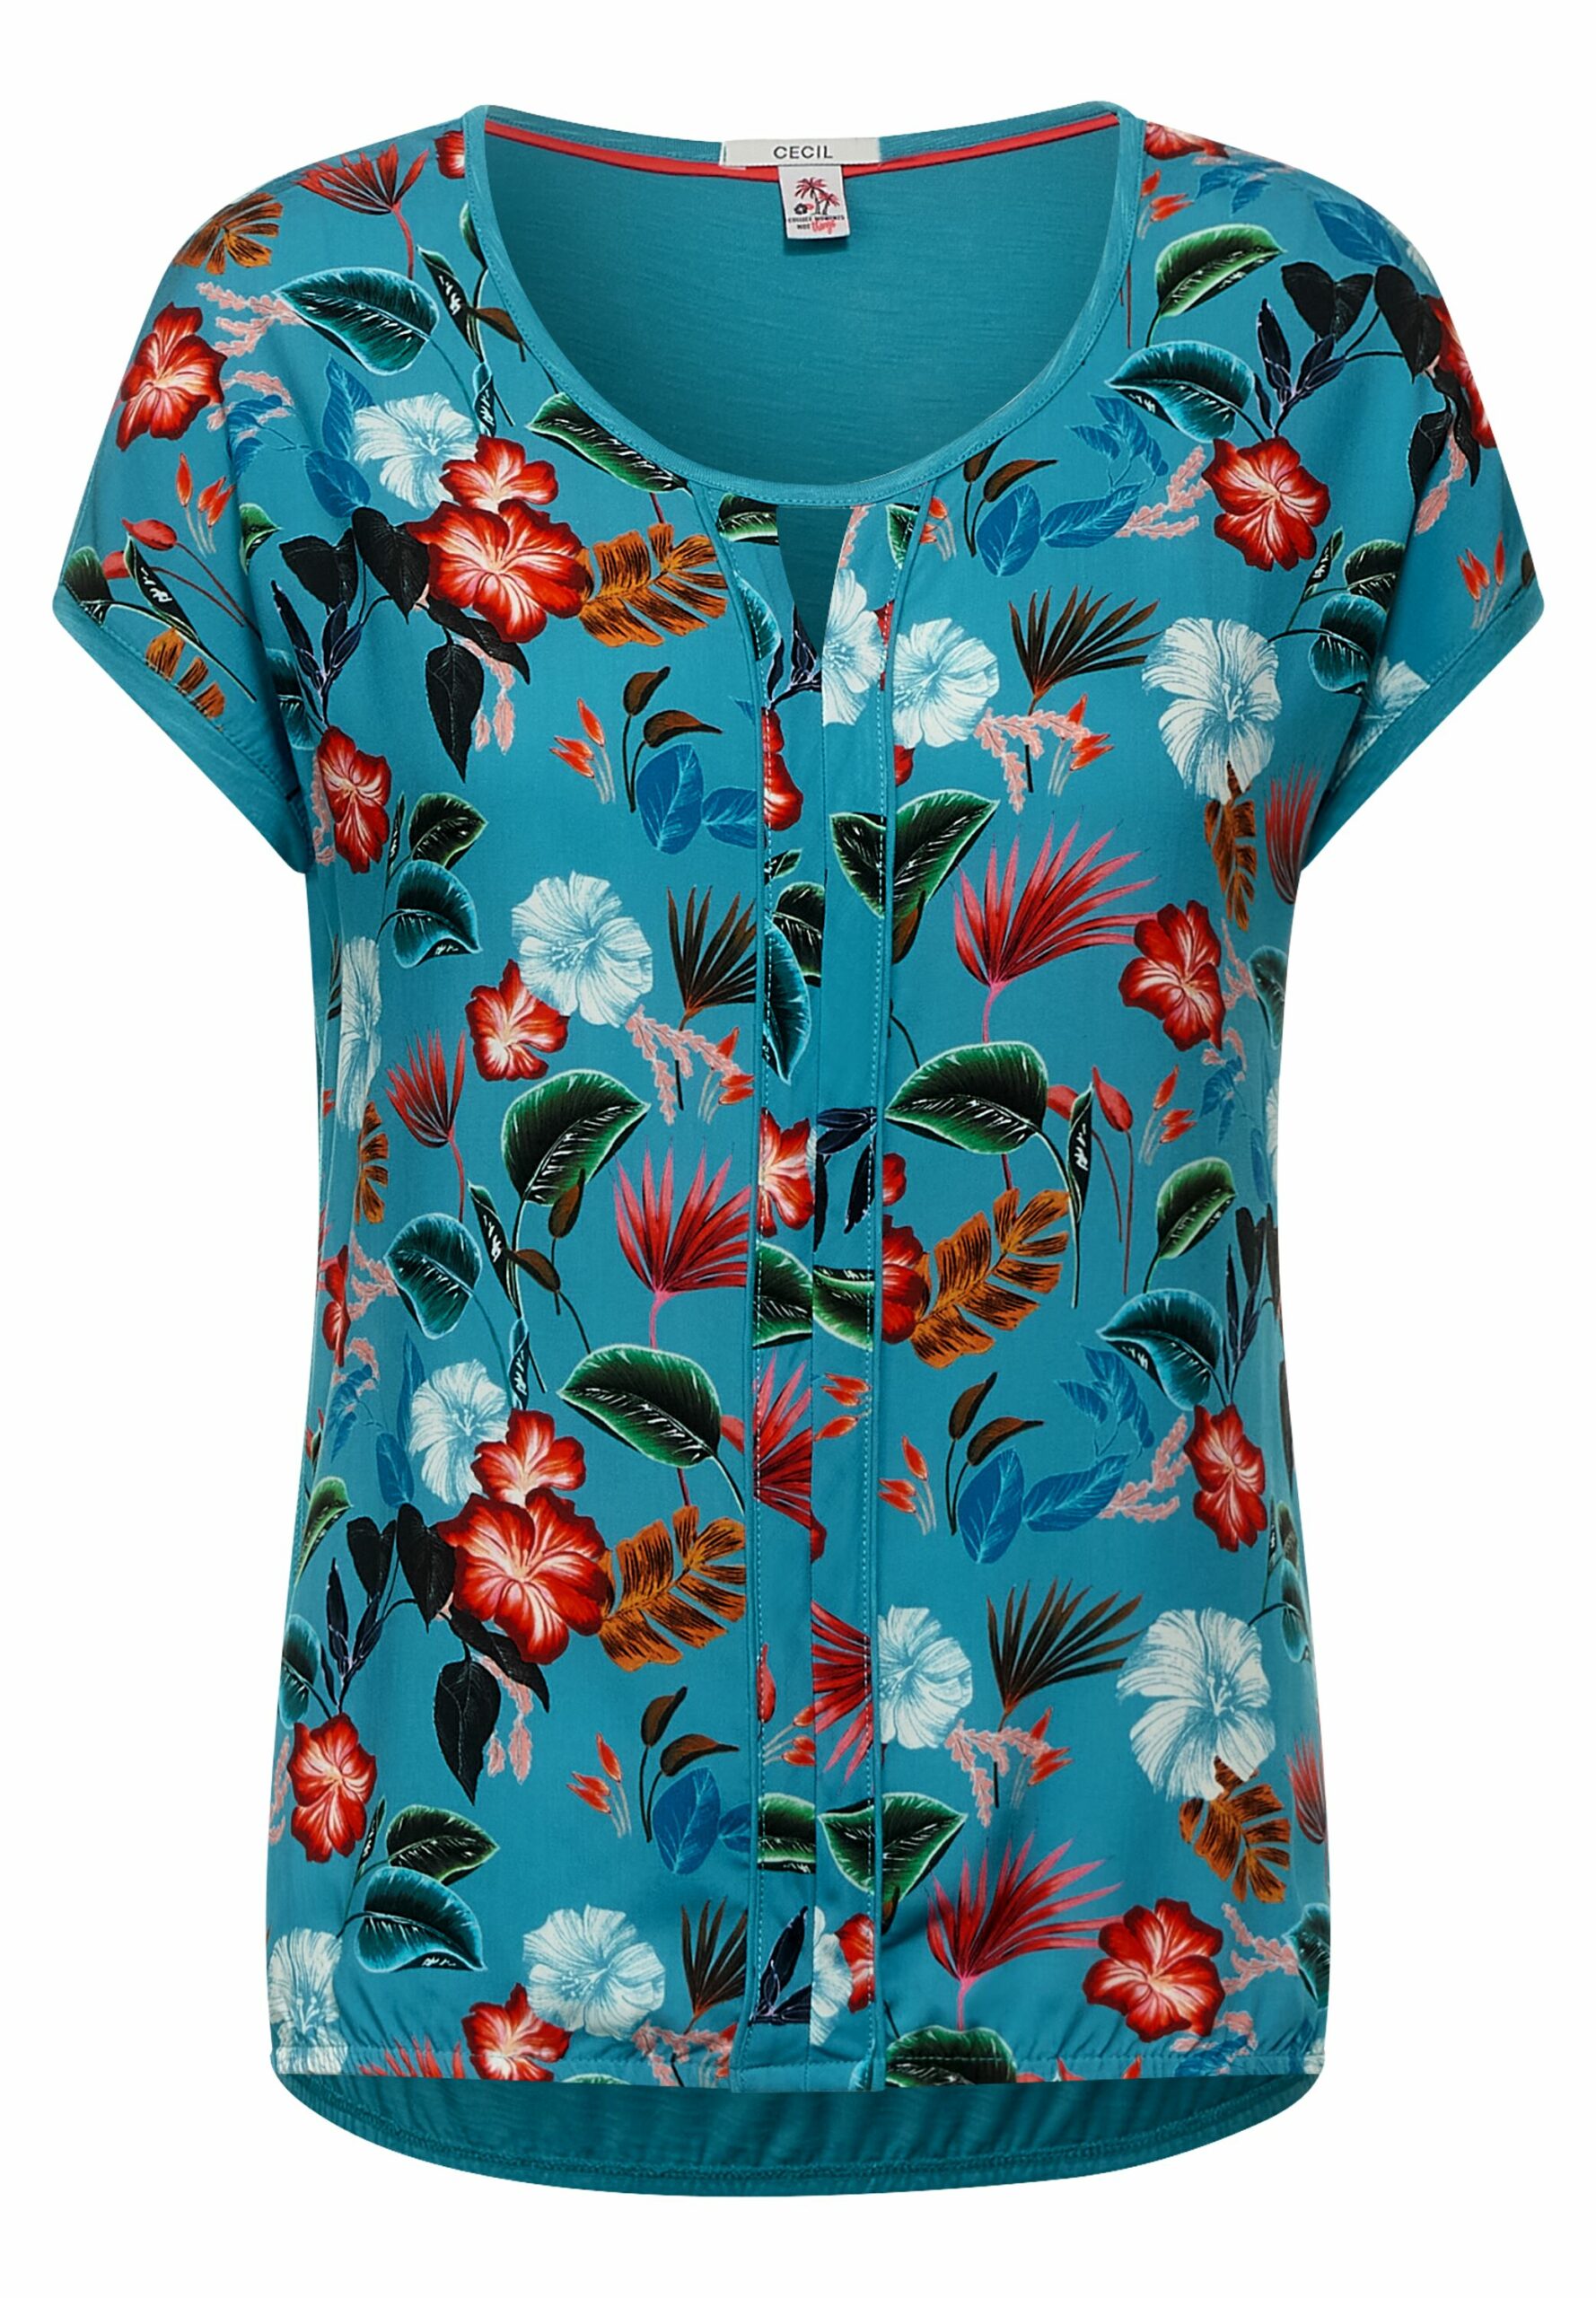 CECIL - T-Shirt mit Blumen Onlineshop - Print Modehaus Fahr